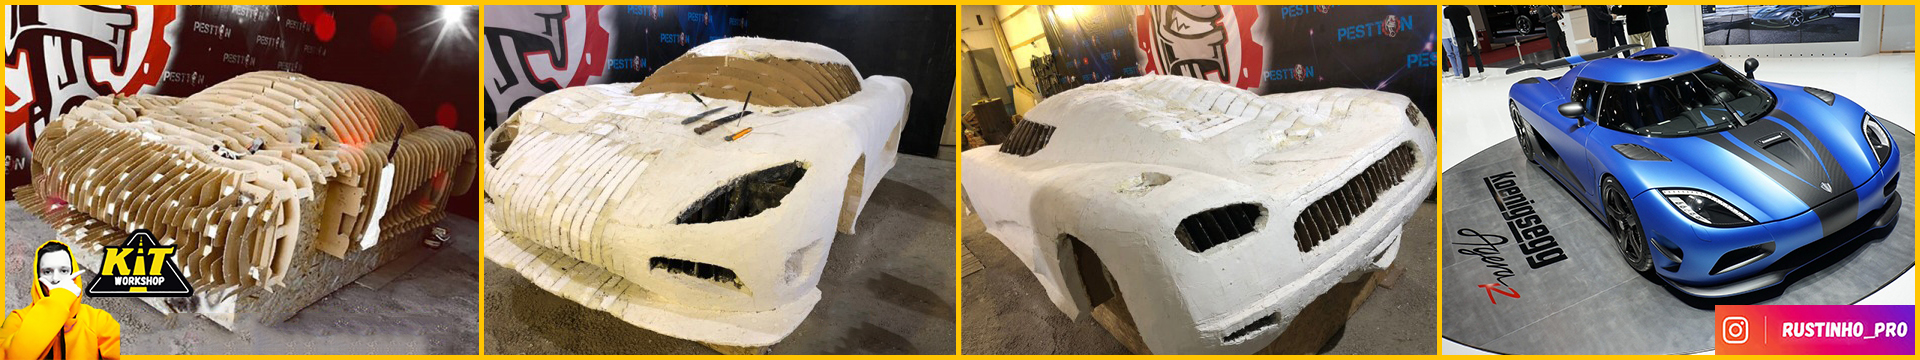 Koenigsegg Agera R replica build from car buck files